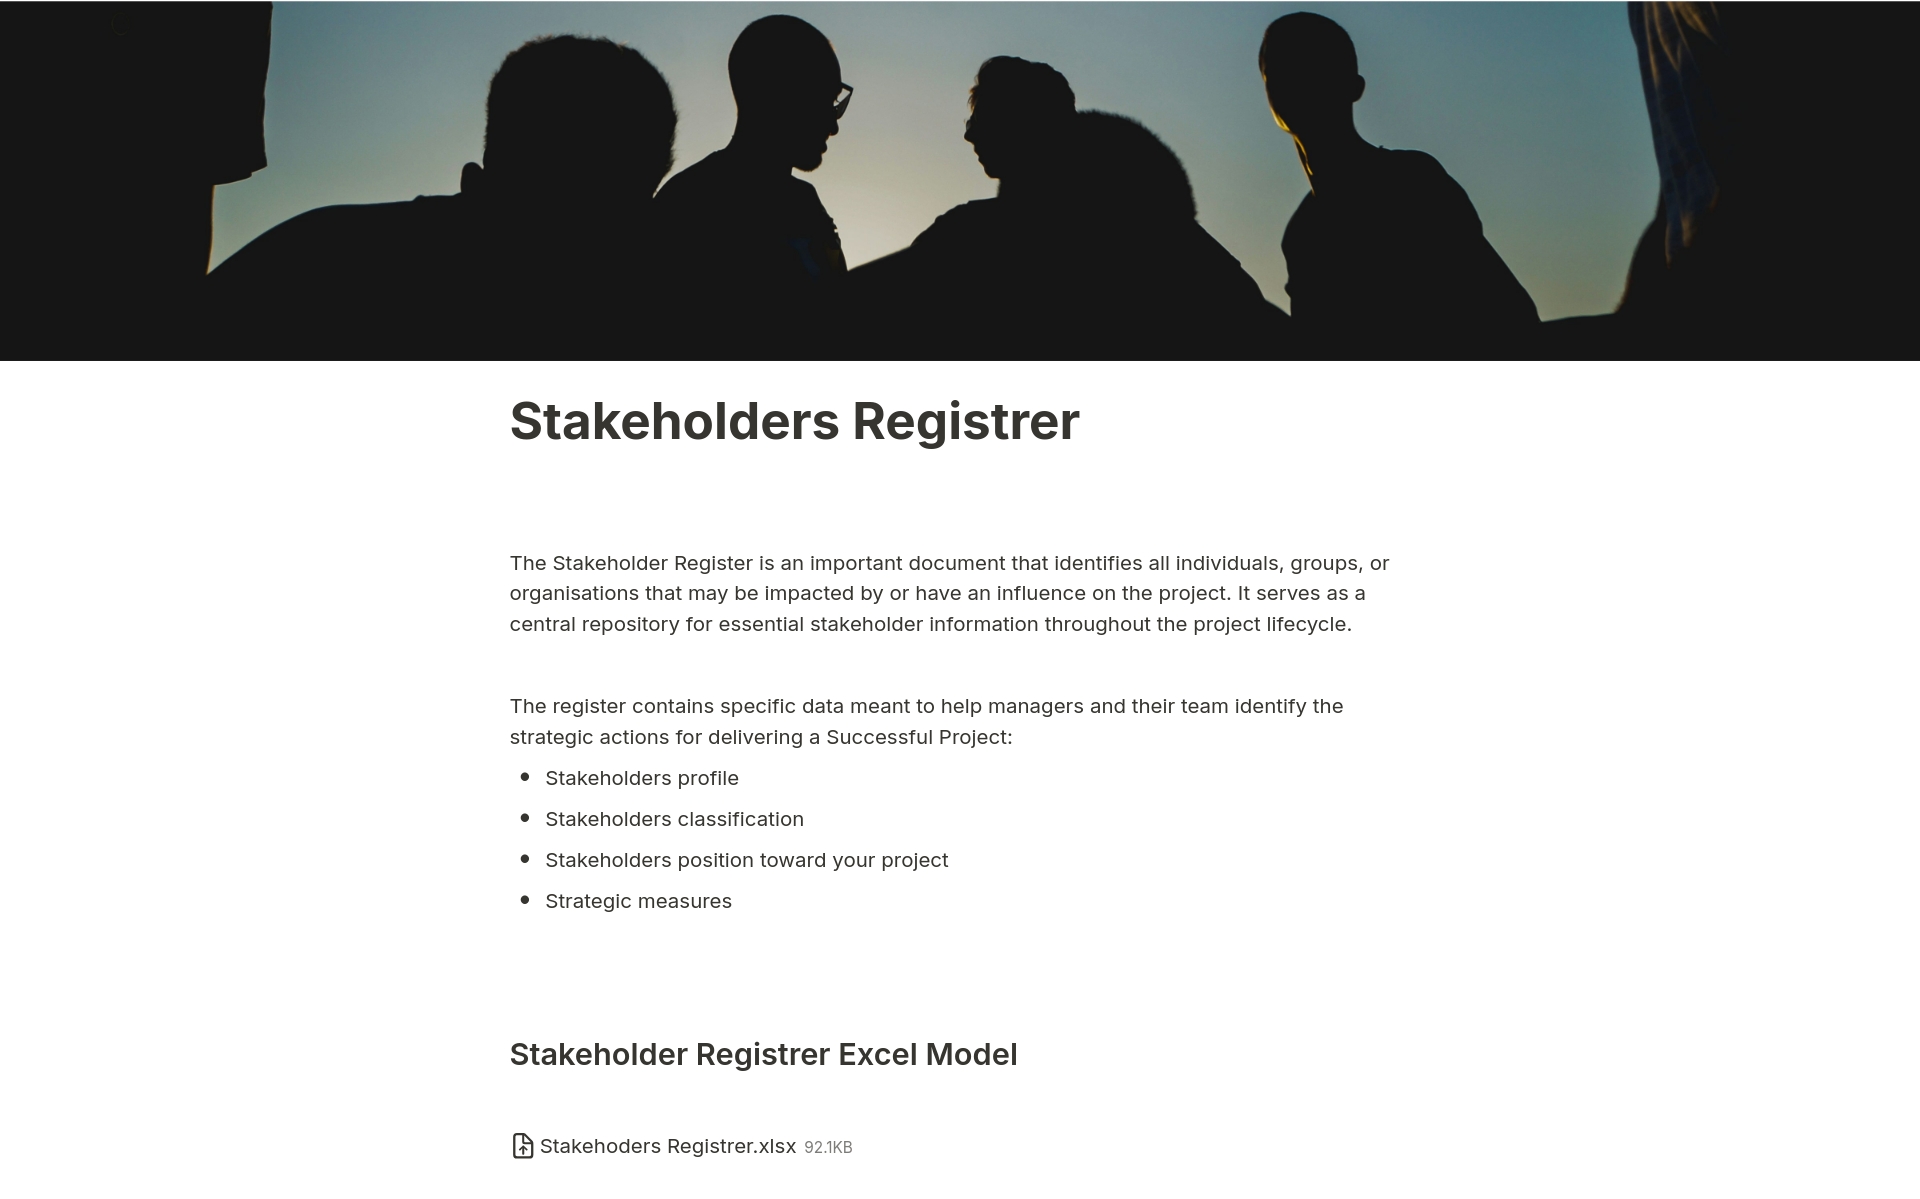 Aperçu du modèle de Stakeholders Registrer